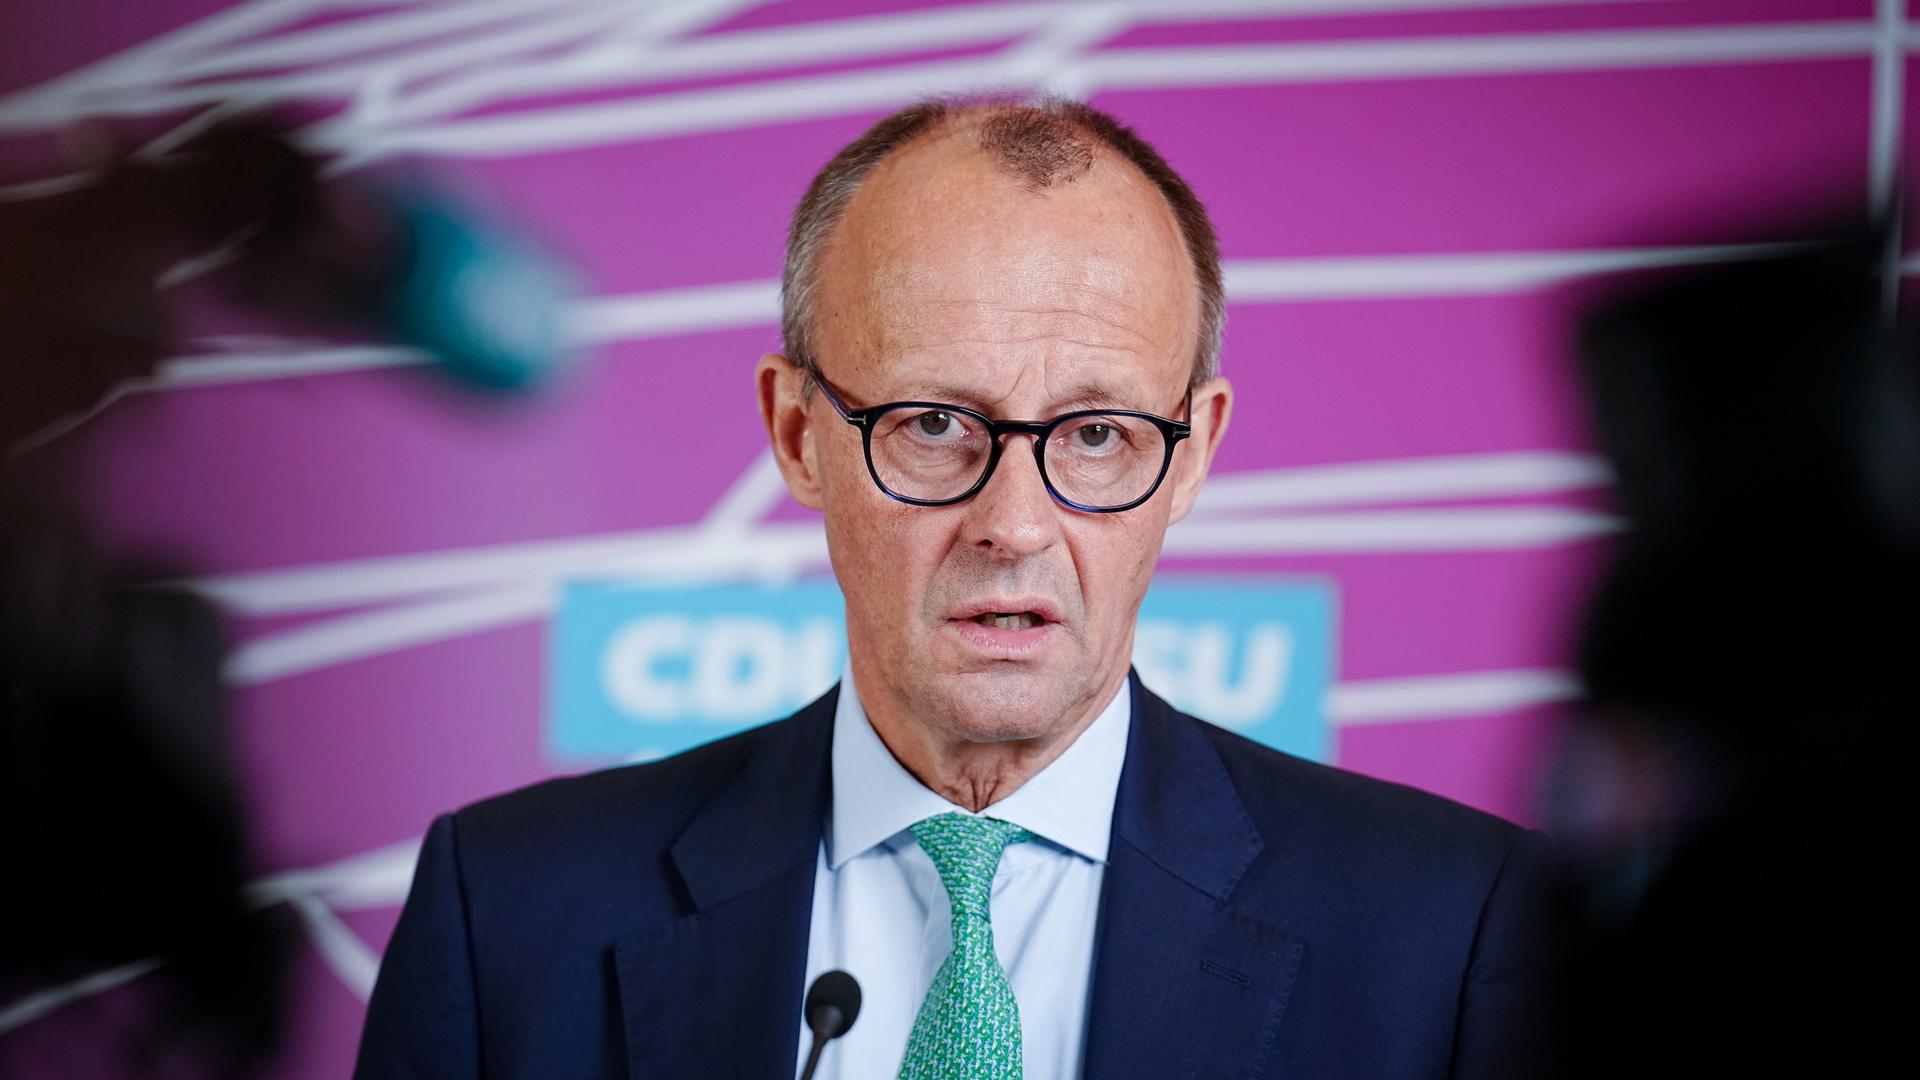 Friedrich Merz (CDU), CDU-Bundesvorsitzender und Unionsfraktionsvorsitzender im Bundestag, gibt ein Pressestatement zu Beginn der Fraktionssitzung von CDU/CSU ab.